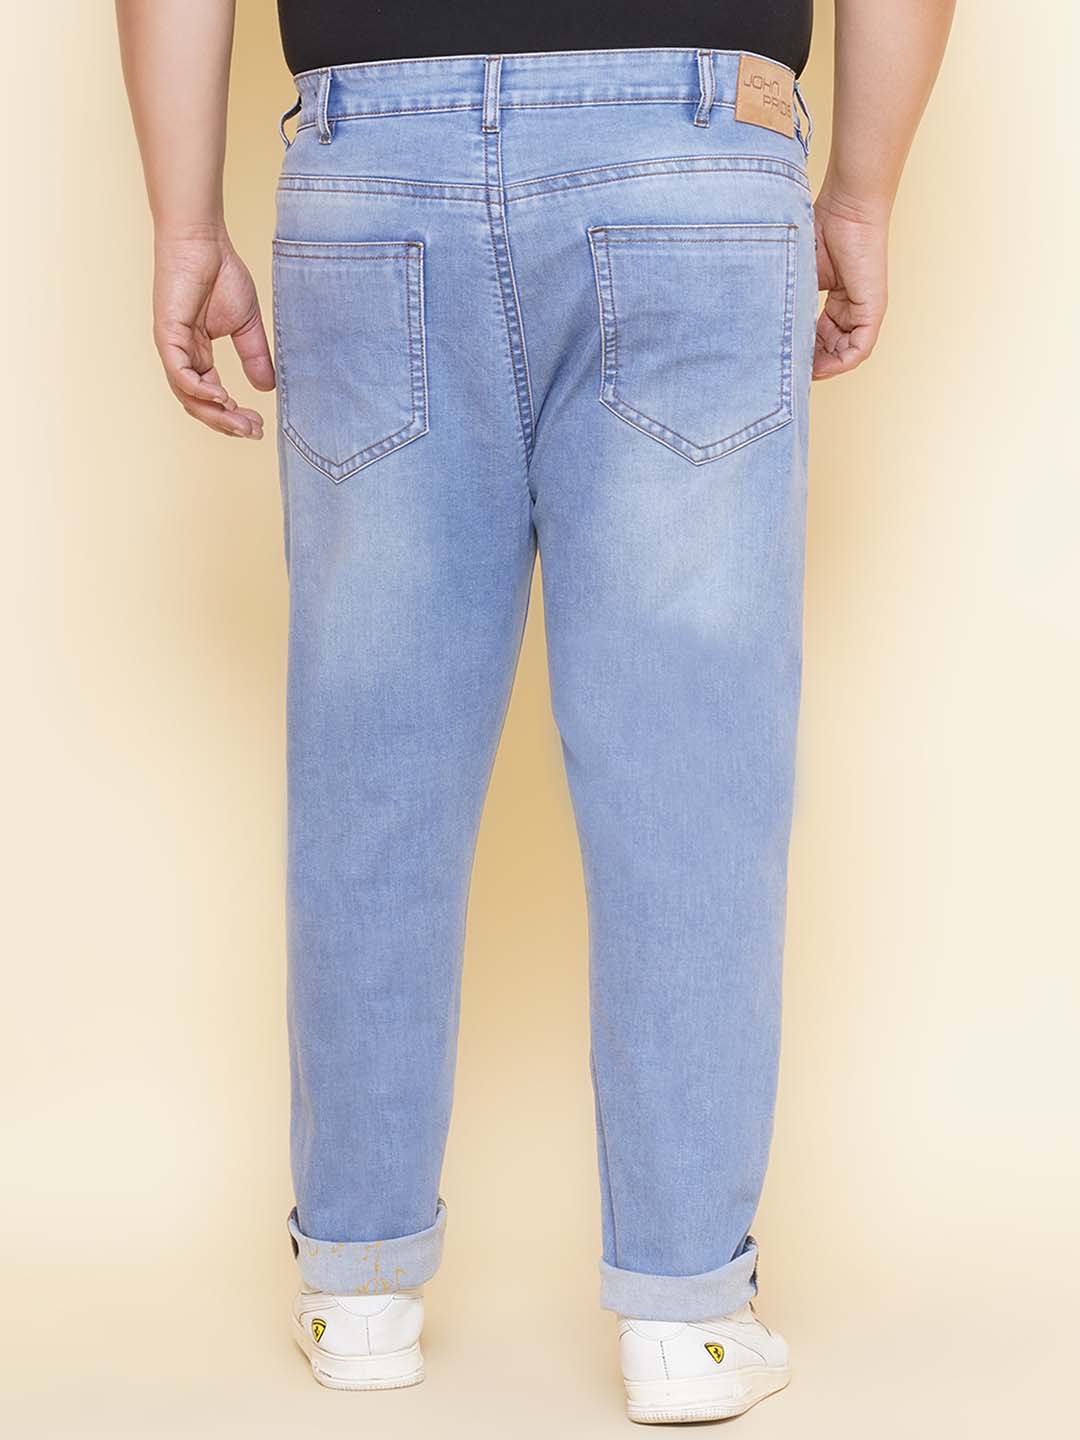 bottomwear/jeans/JPJ12407/jpj12407-5.jpg